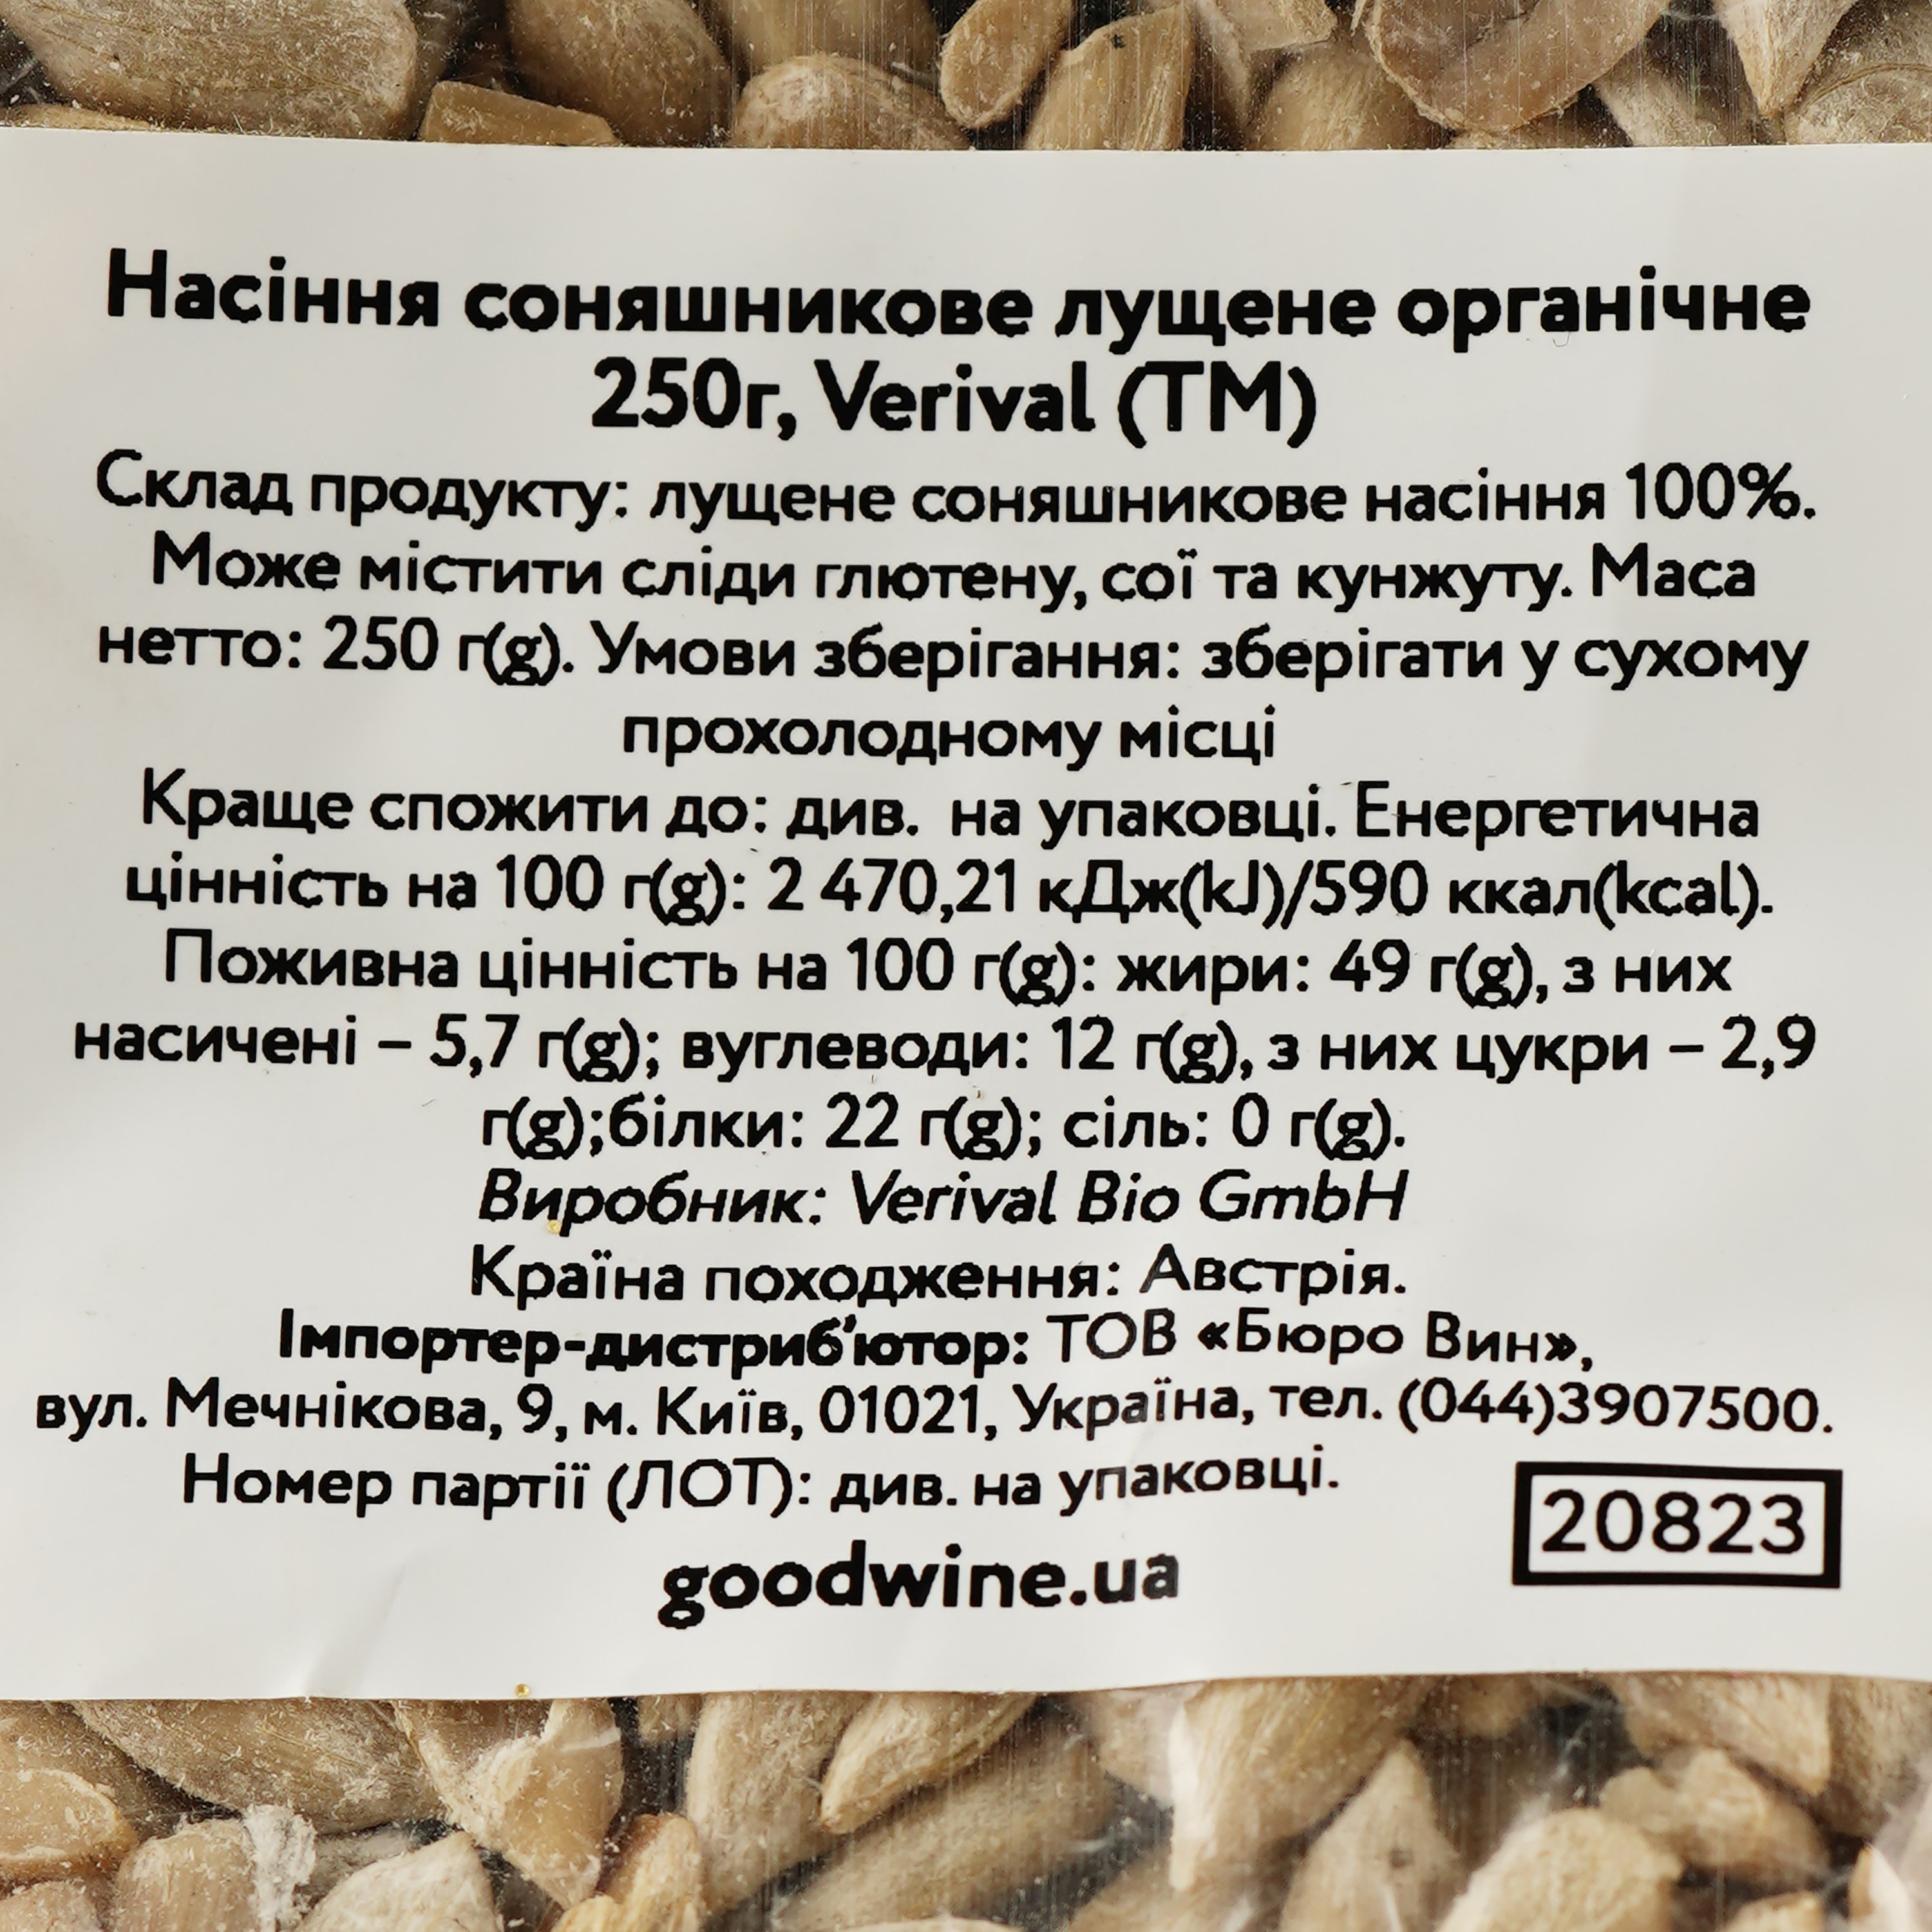 Семена подсолнечника Verival очищенные органические 250 г - фото 3